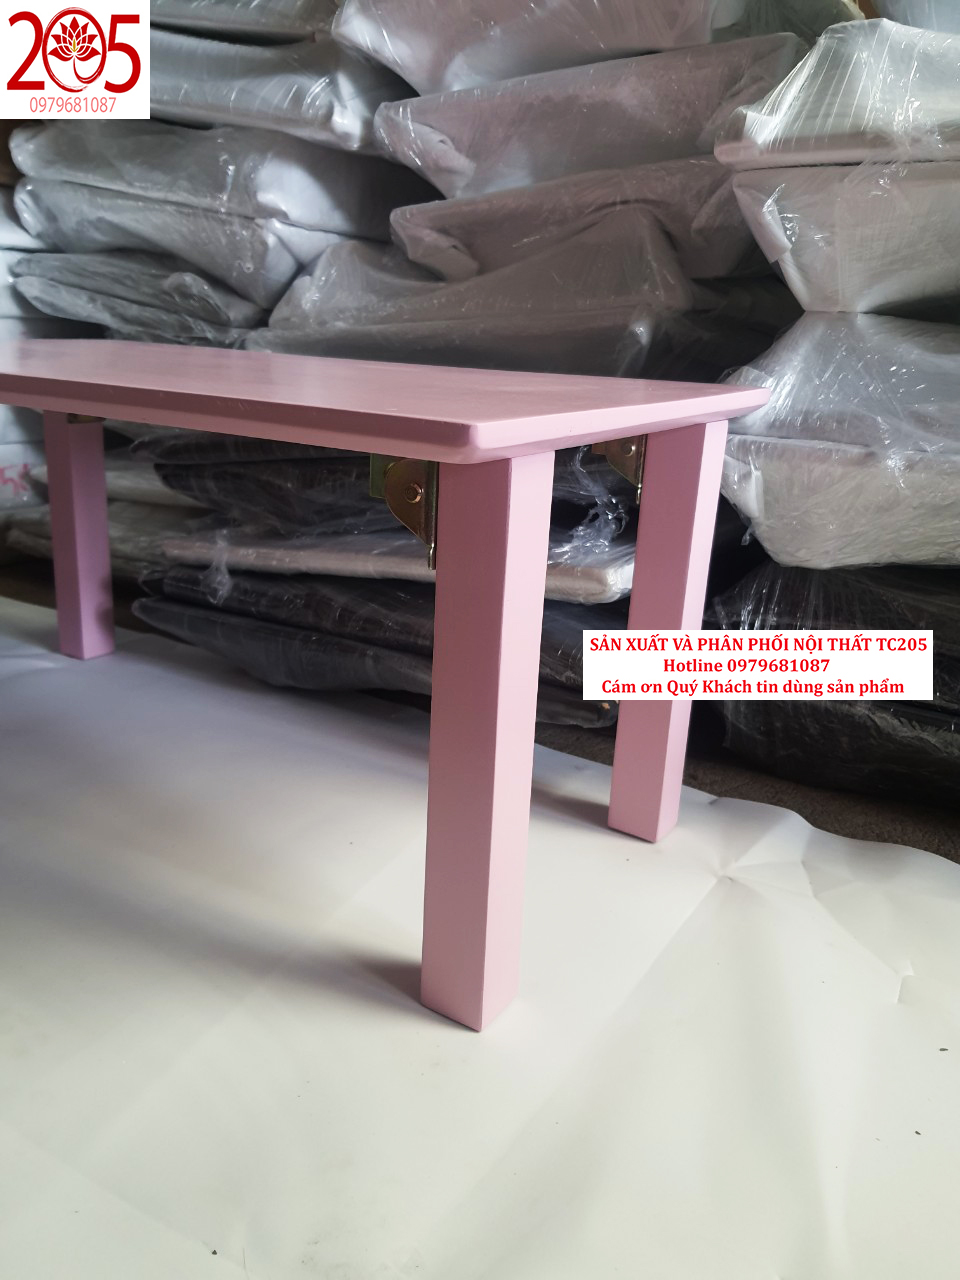 BÀN XẾP CHÂN VUÔNG GỖ CAO SU 70x40x30cm MÀU HỒNG - 205TC Folding wooden table